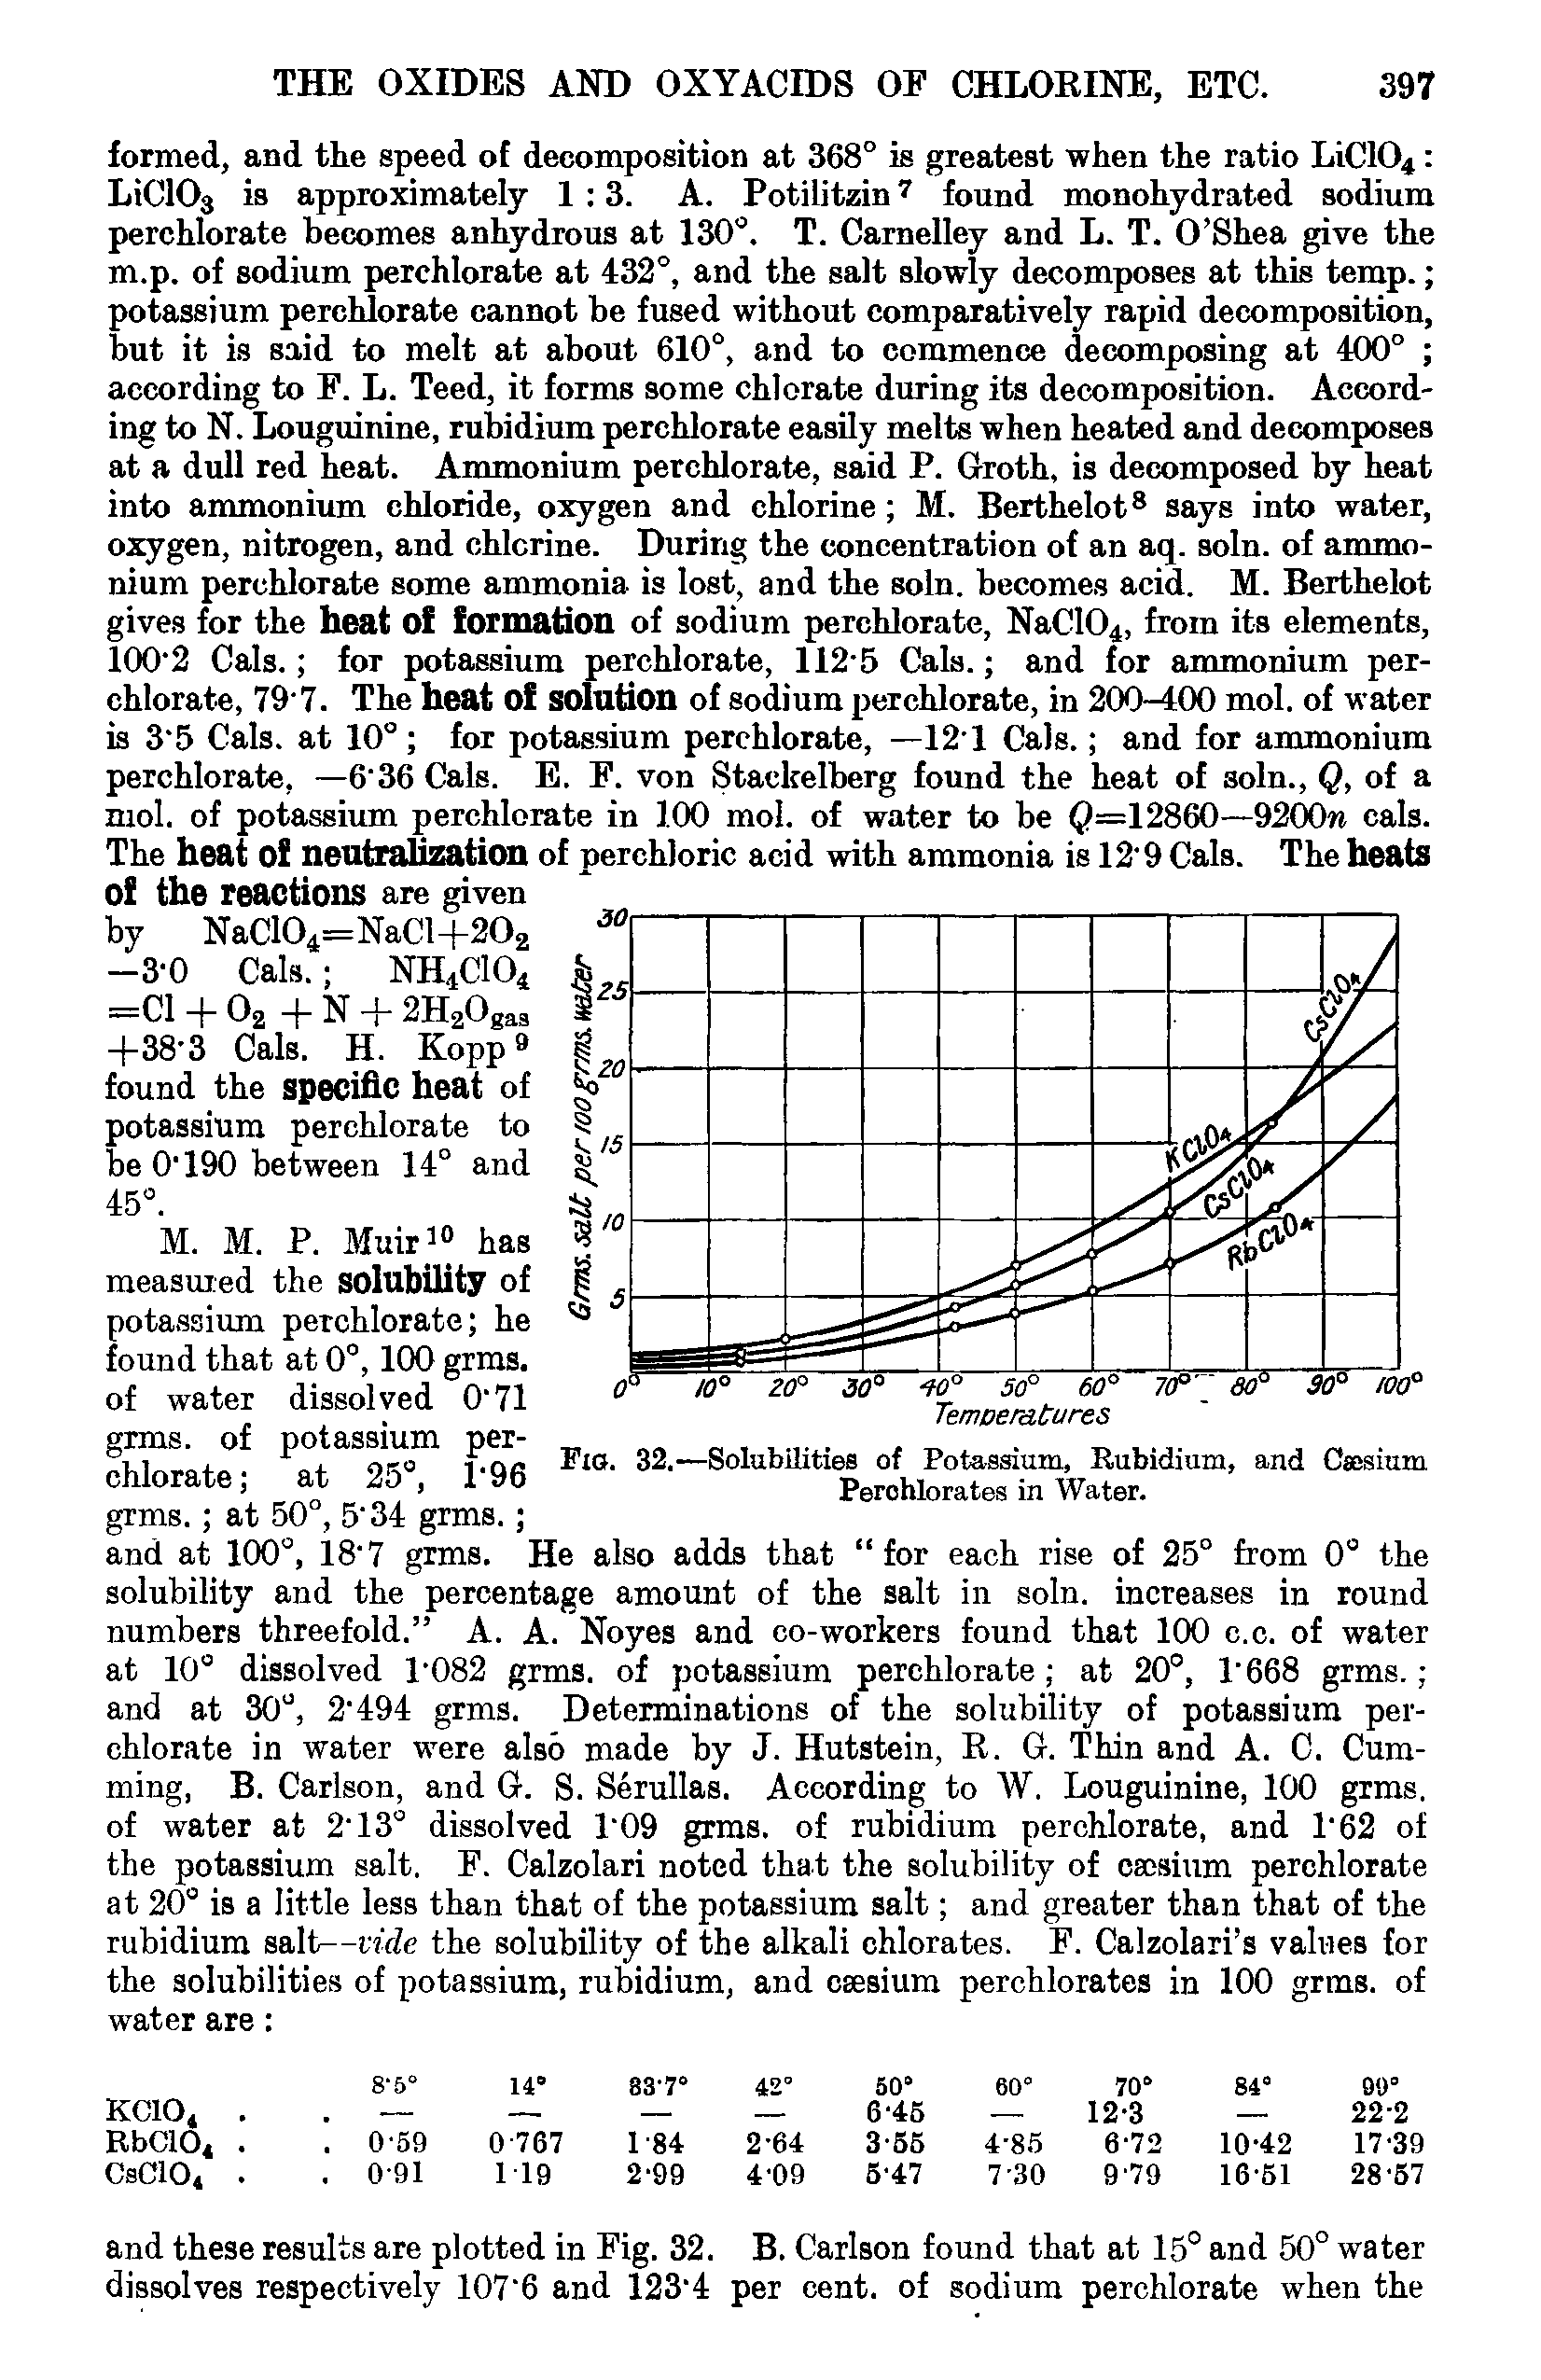 Fig. 32.—Solubilities of Potassium, Rubidium, and Caesium Perchlorates in Water.